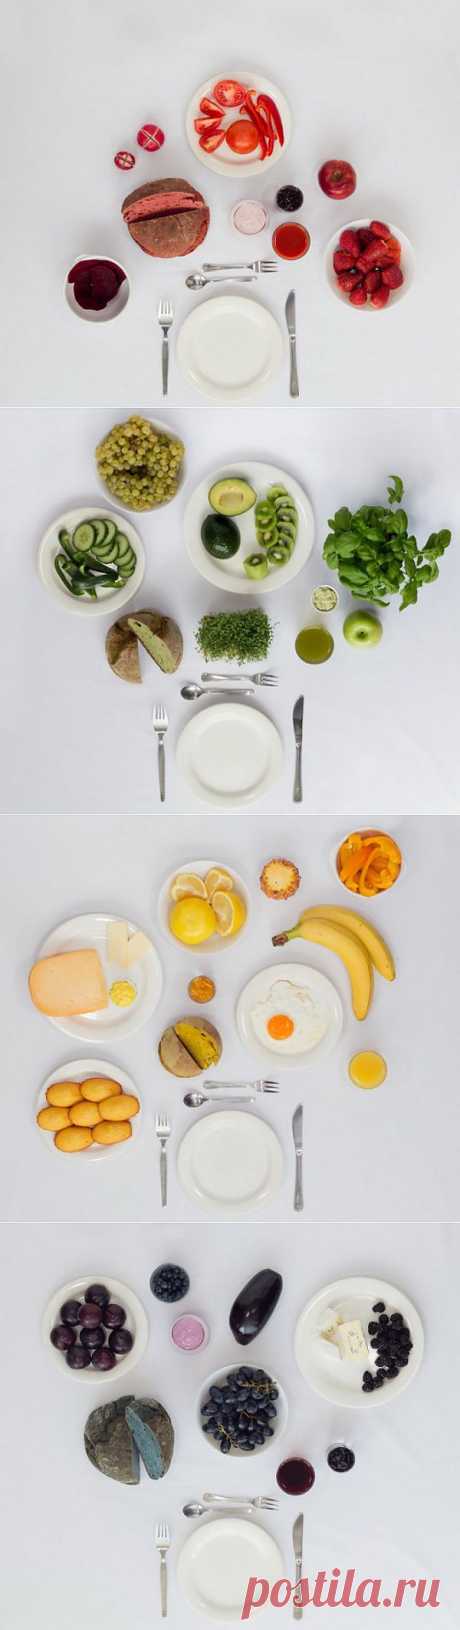 Одноцветный завтрак (4 фото)